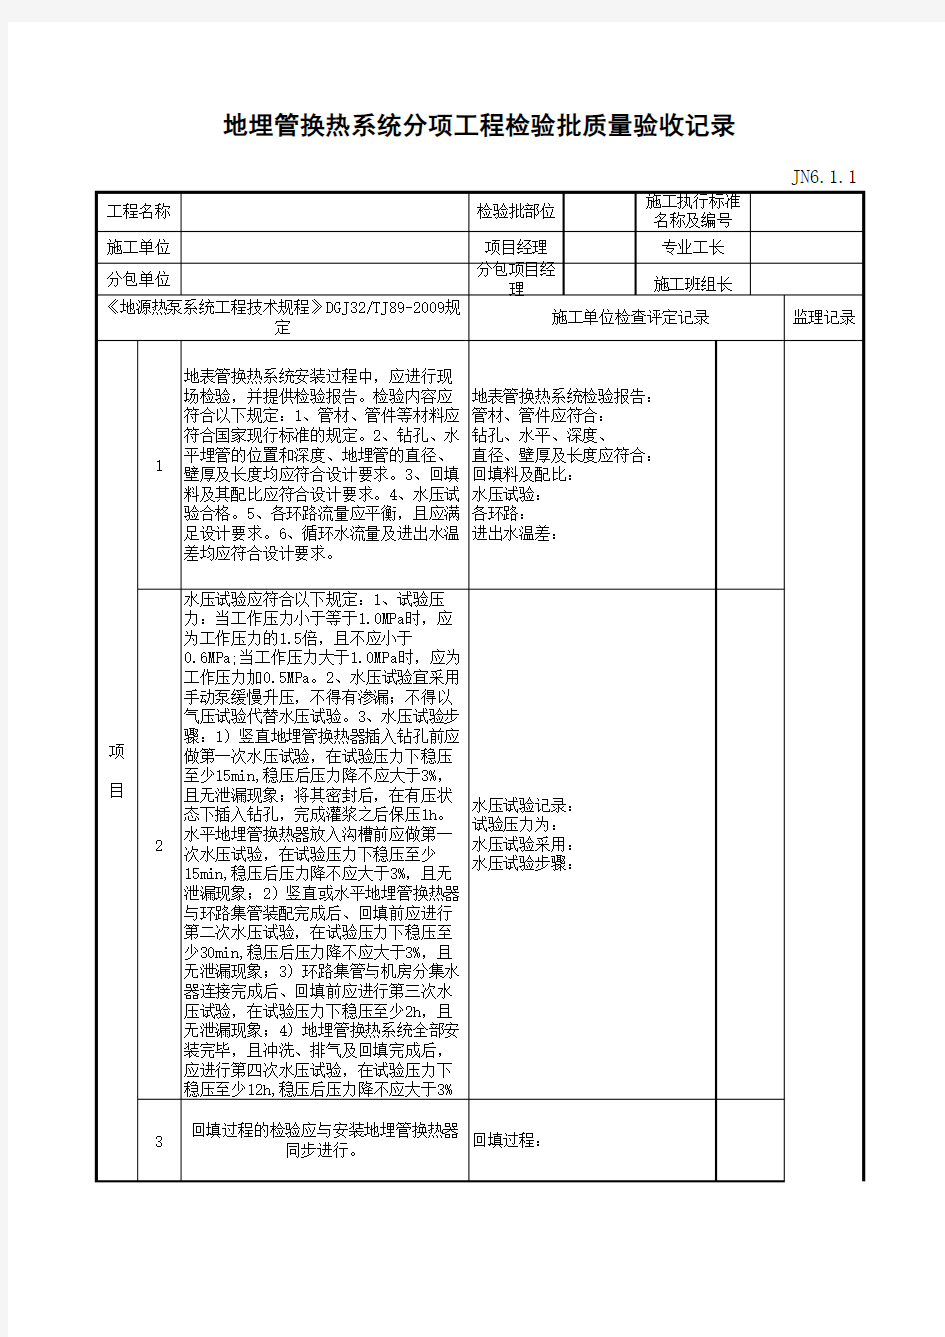 江苏省建设工程质监0190910六版表格文件JN6.1.1